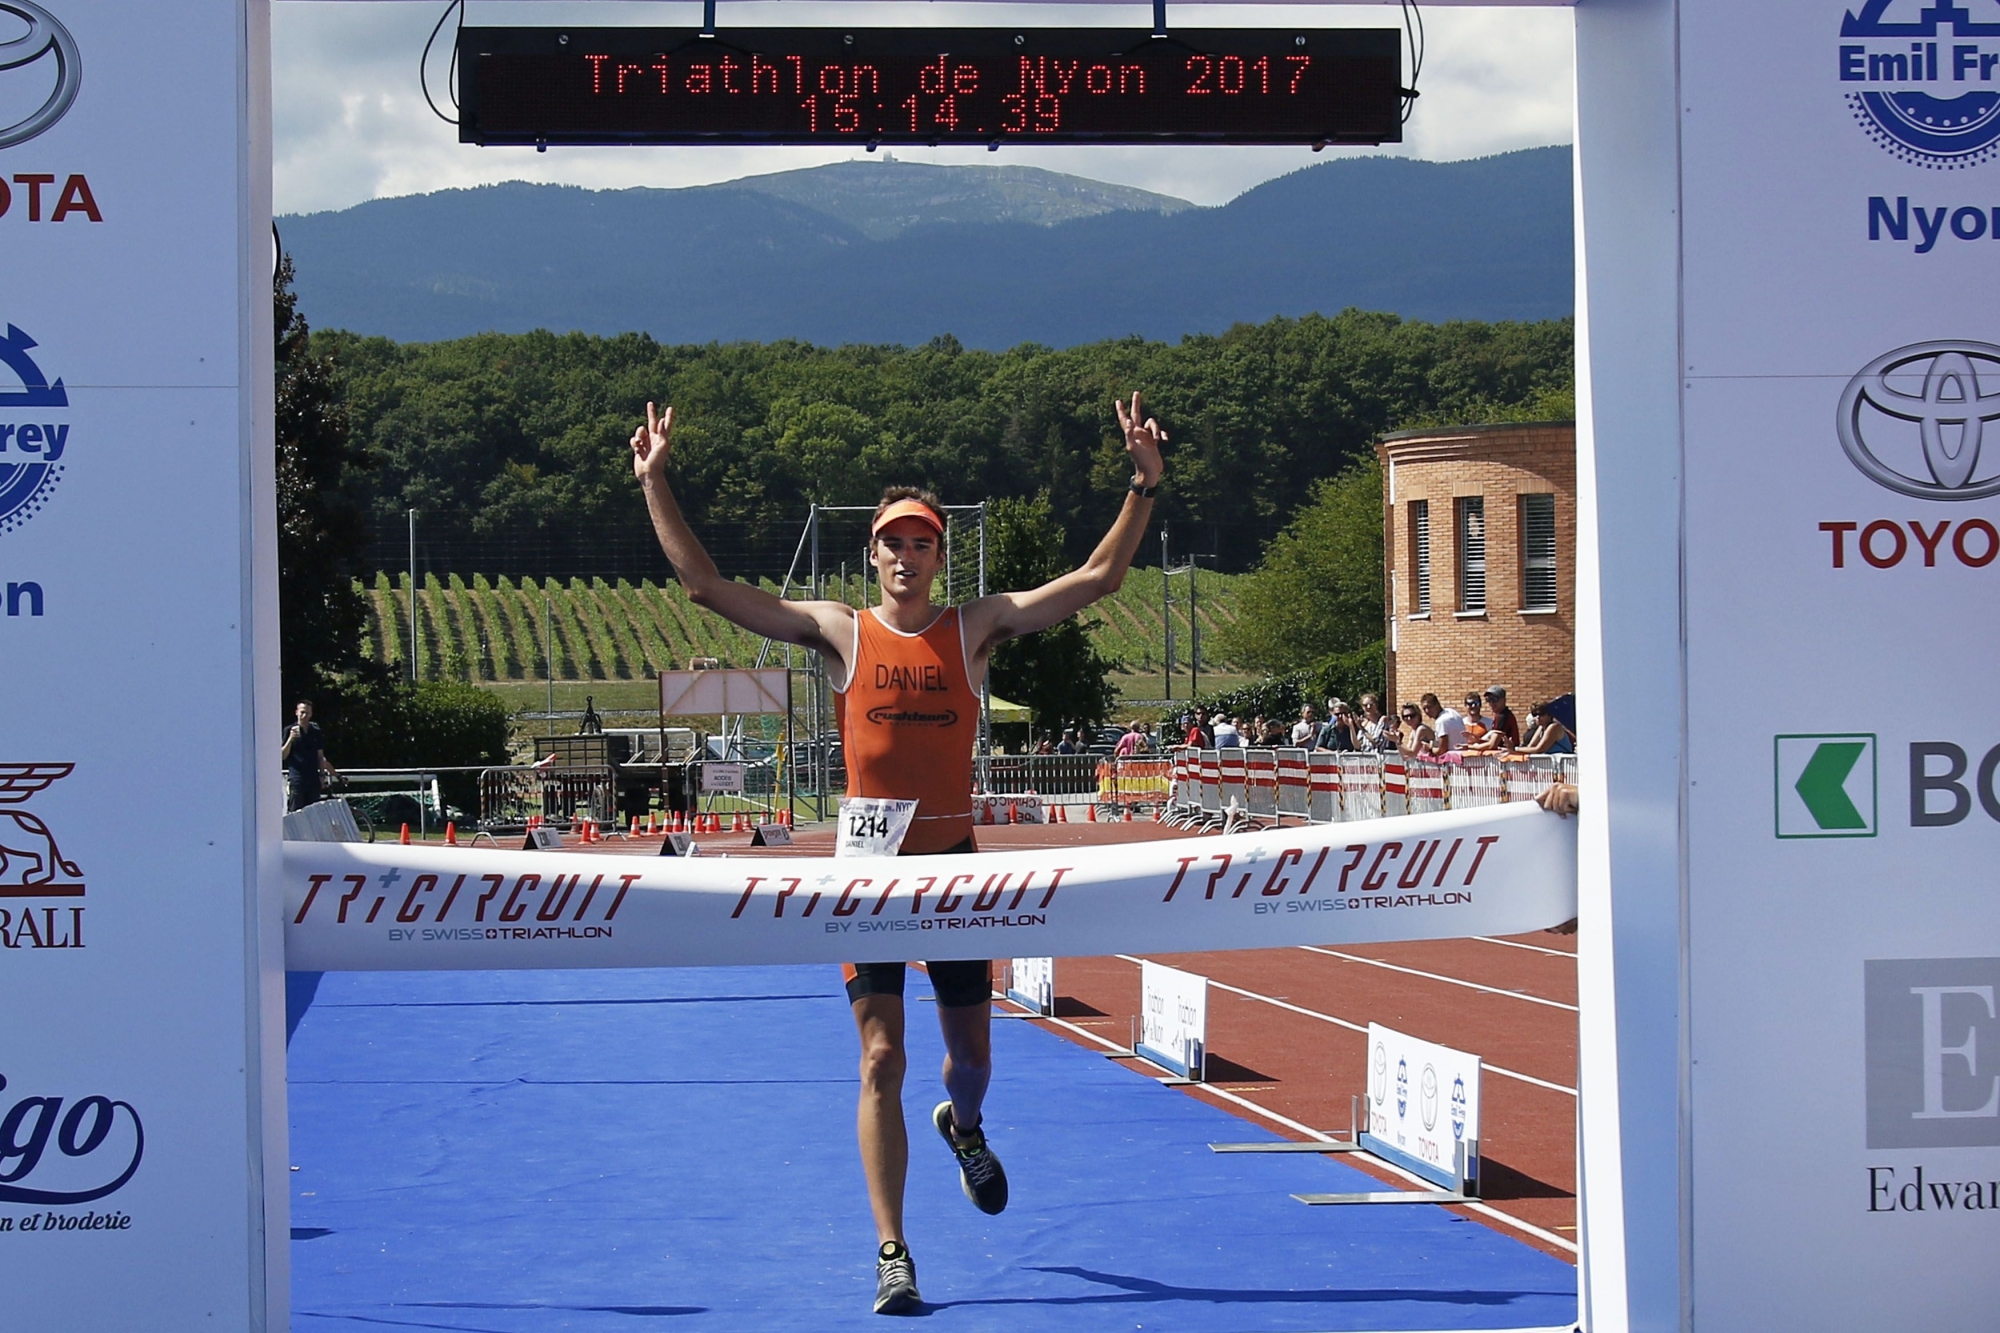 Nyon, Colovray, Dimanche 6 août 2017, Triathlon de Nyon, départ catégorie Olympic, Daniel Besse, vainqueur, Photos Céline Reuille